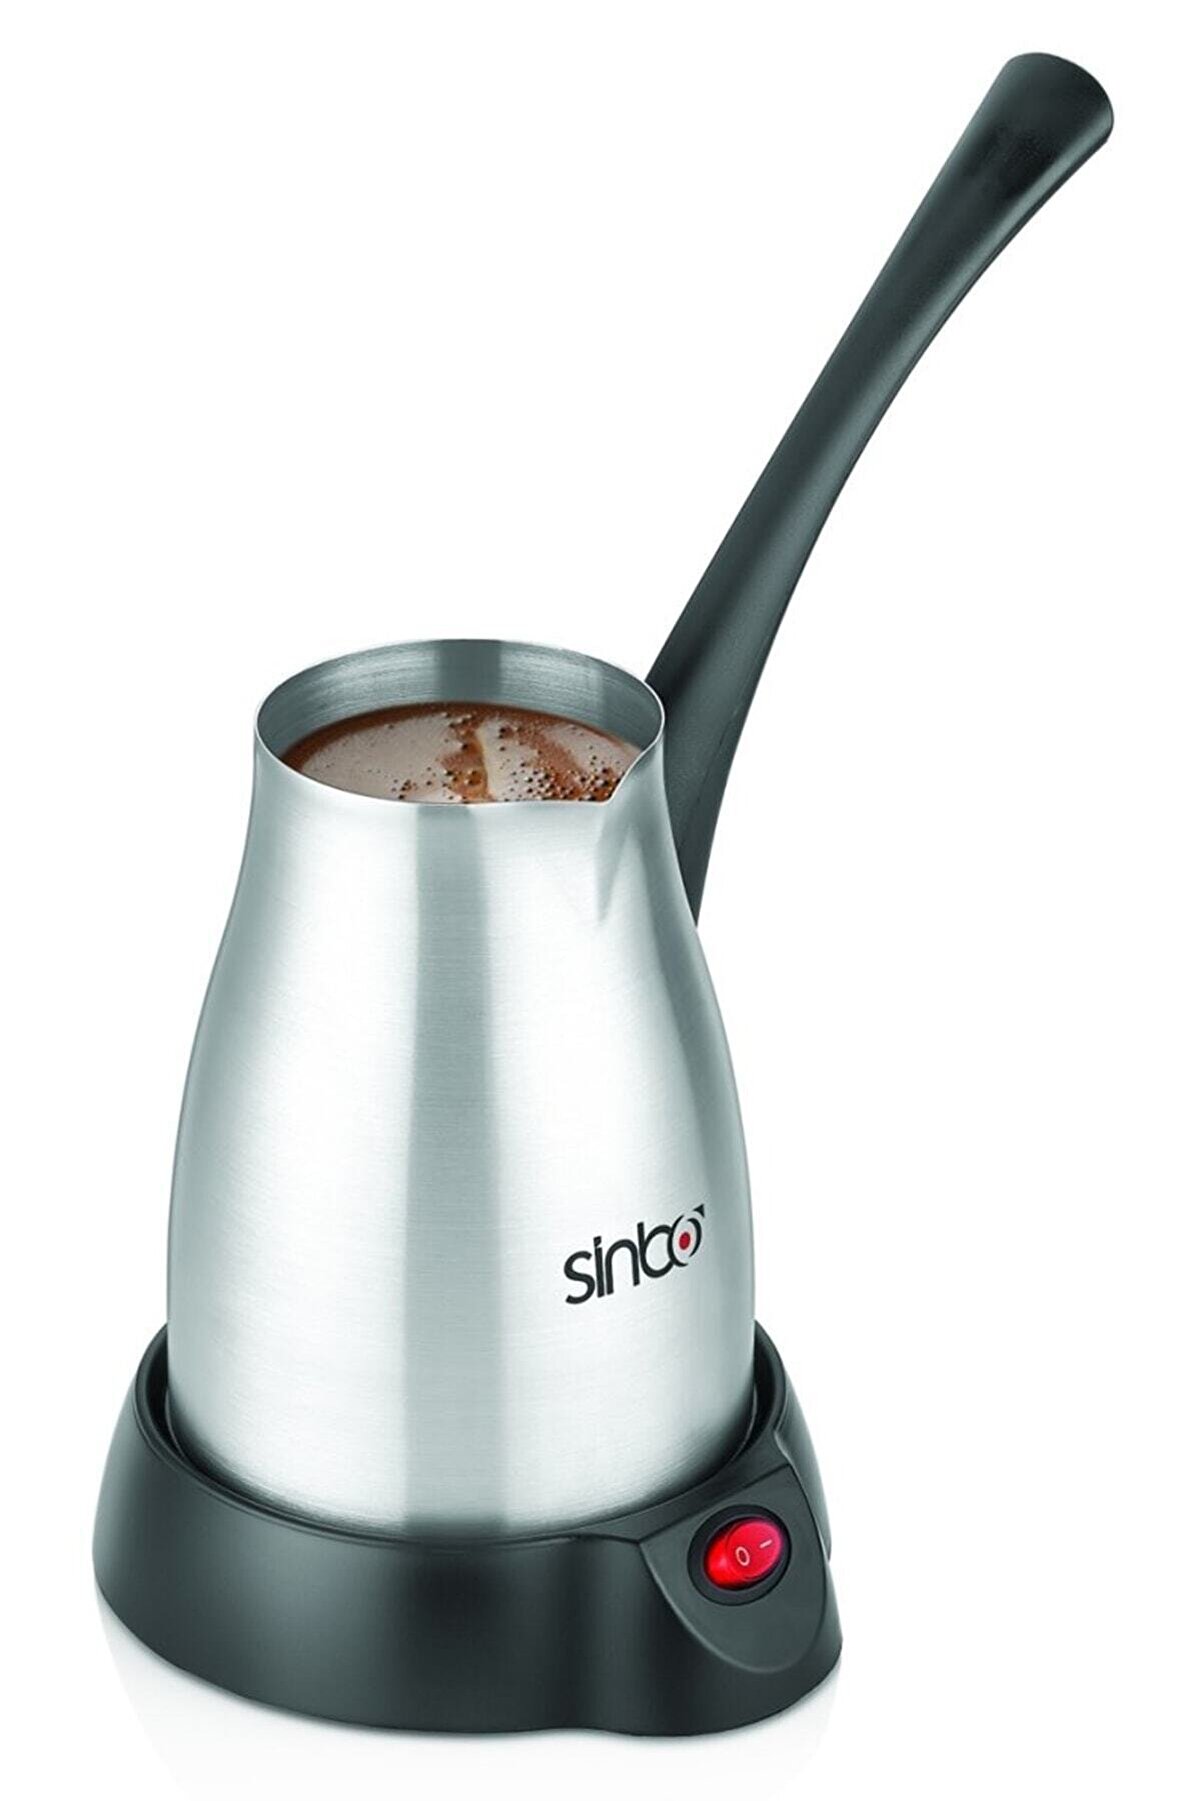 Sinbo Scm-2957 Elektrikli Cezve Kahve Makinesi Inox